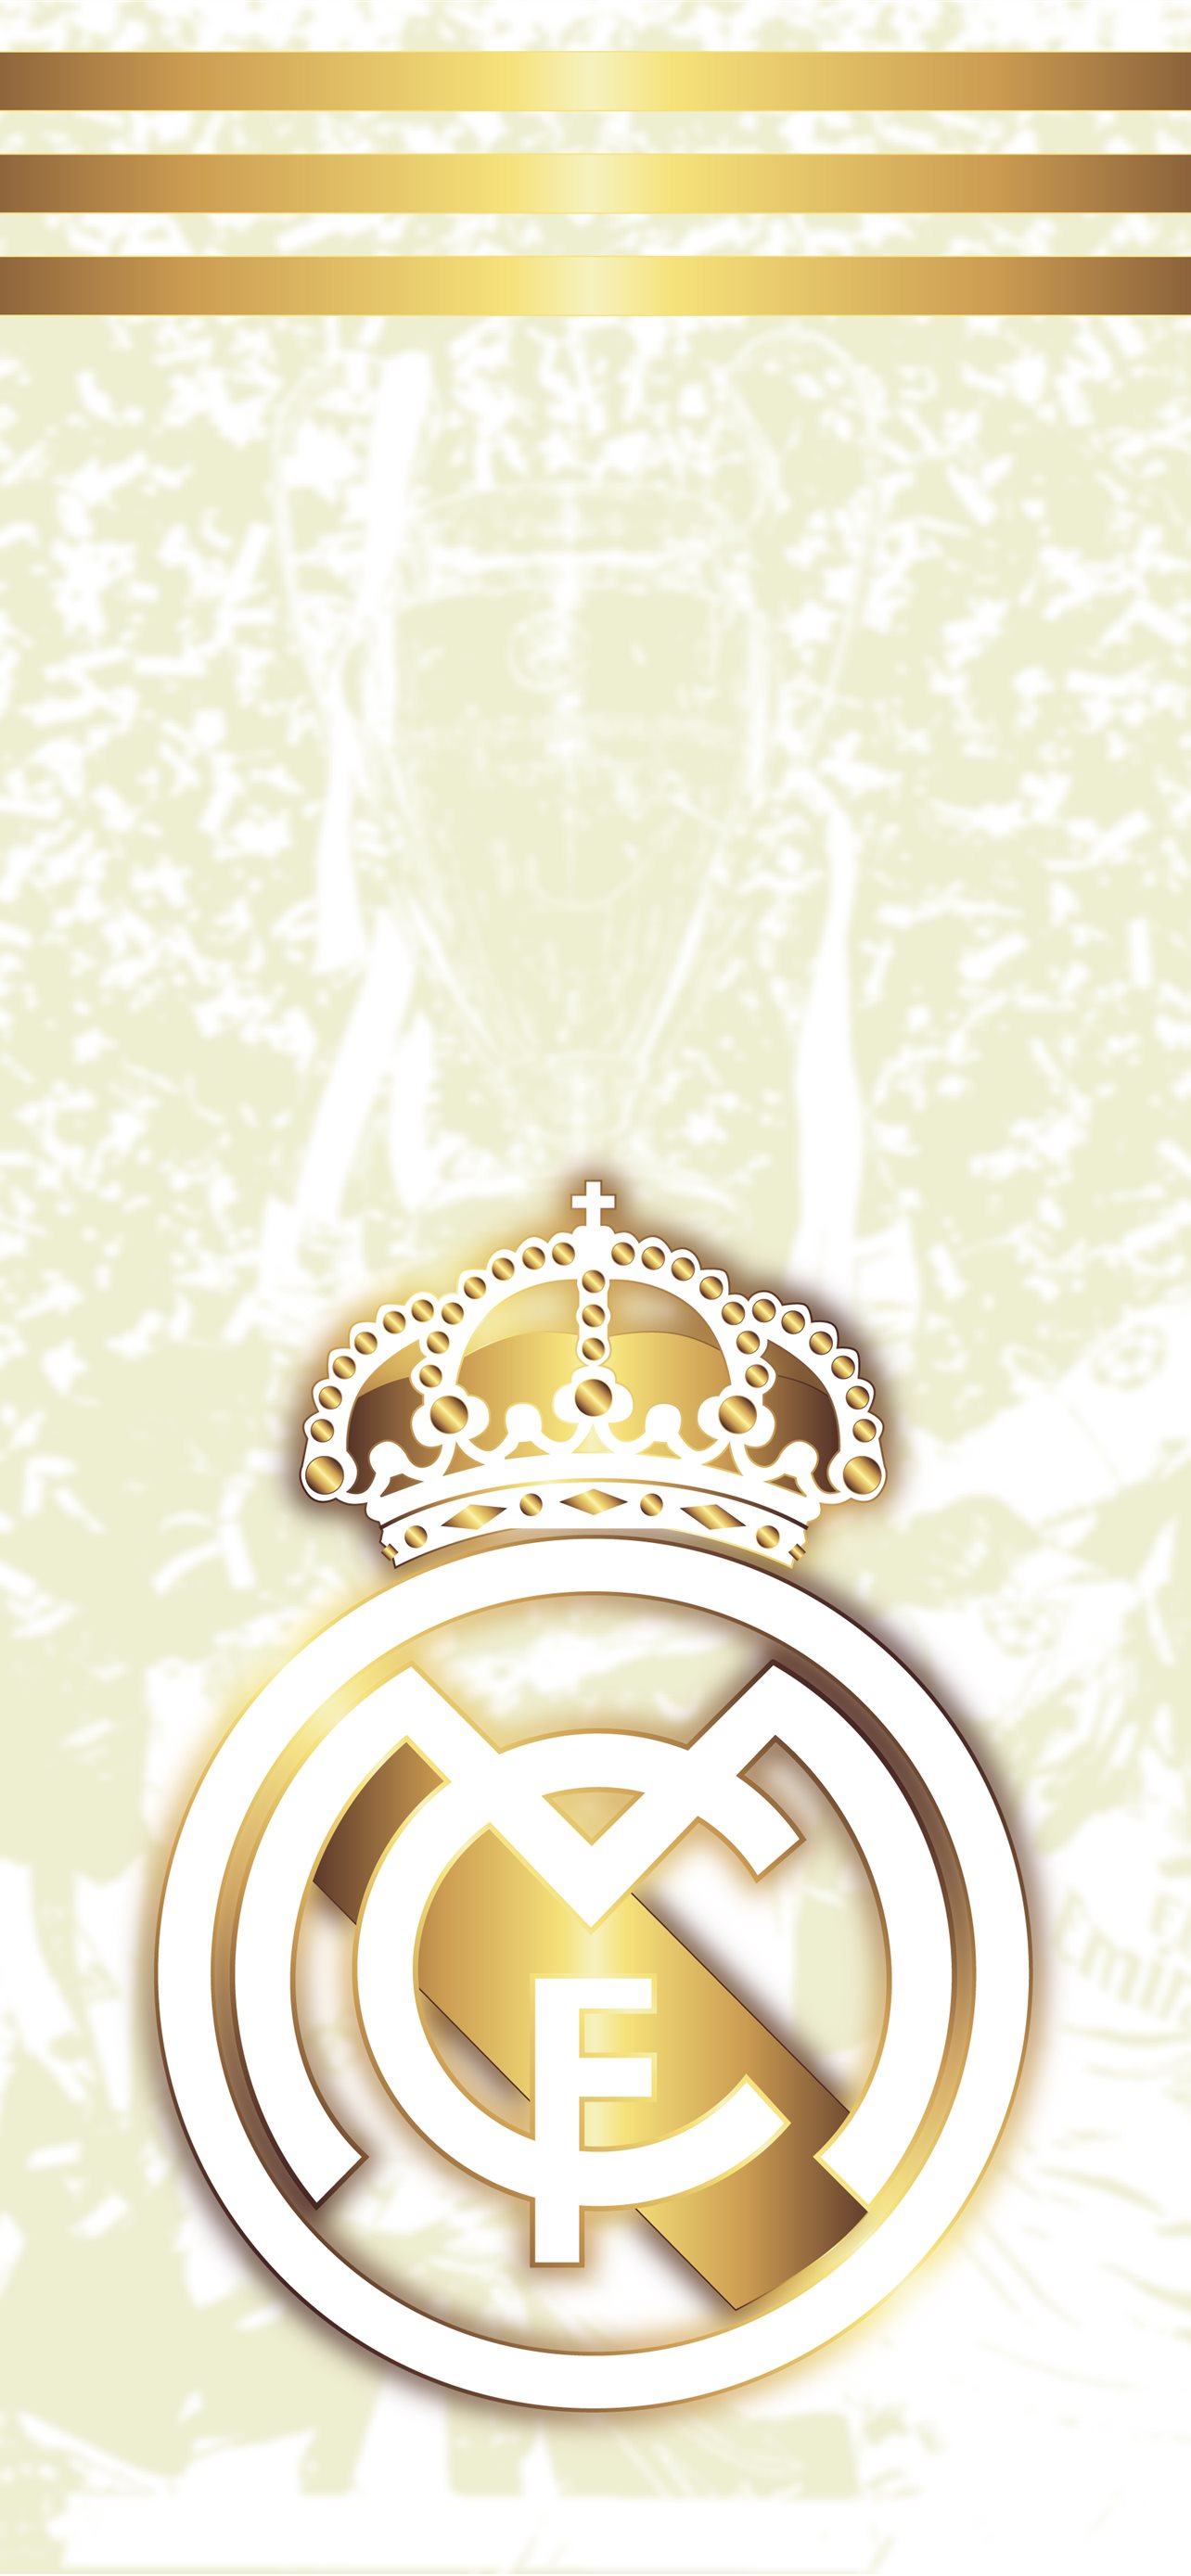 Real Madrid  Real madrid wallpapers Real madrid logo Madrid wallpaper